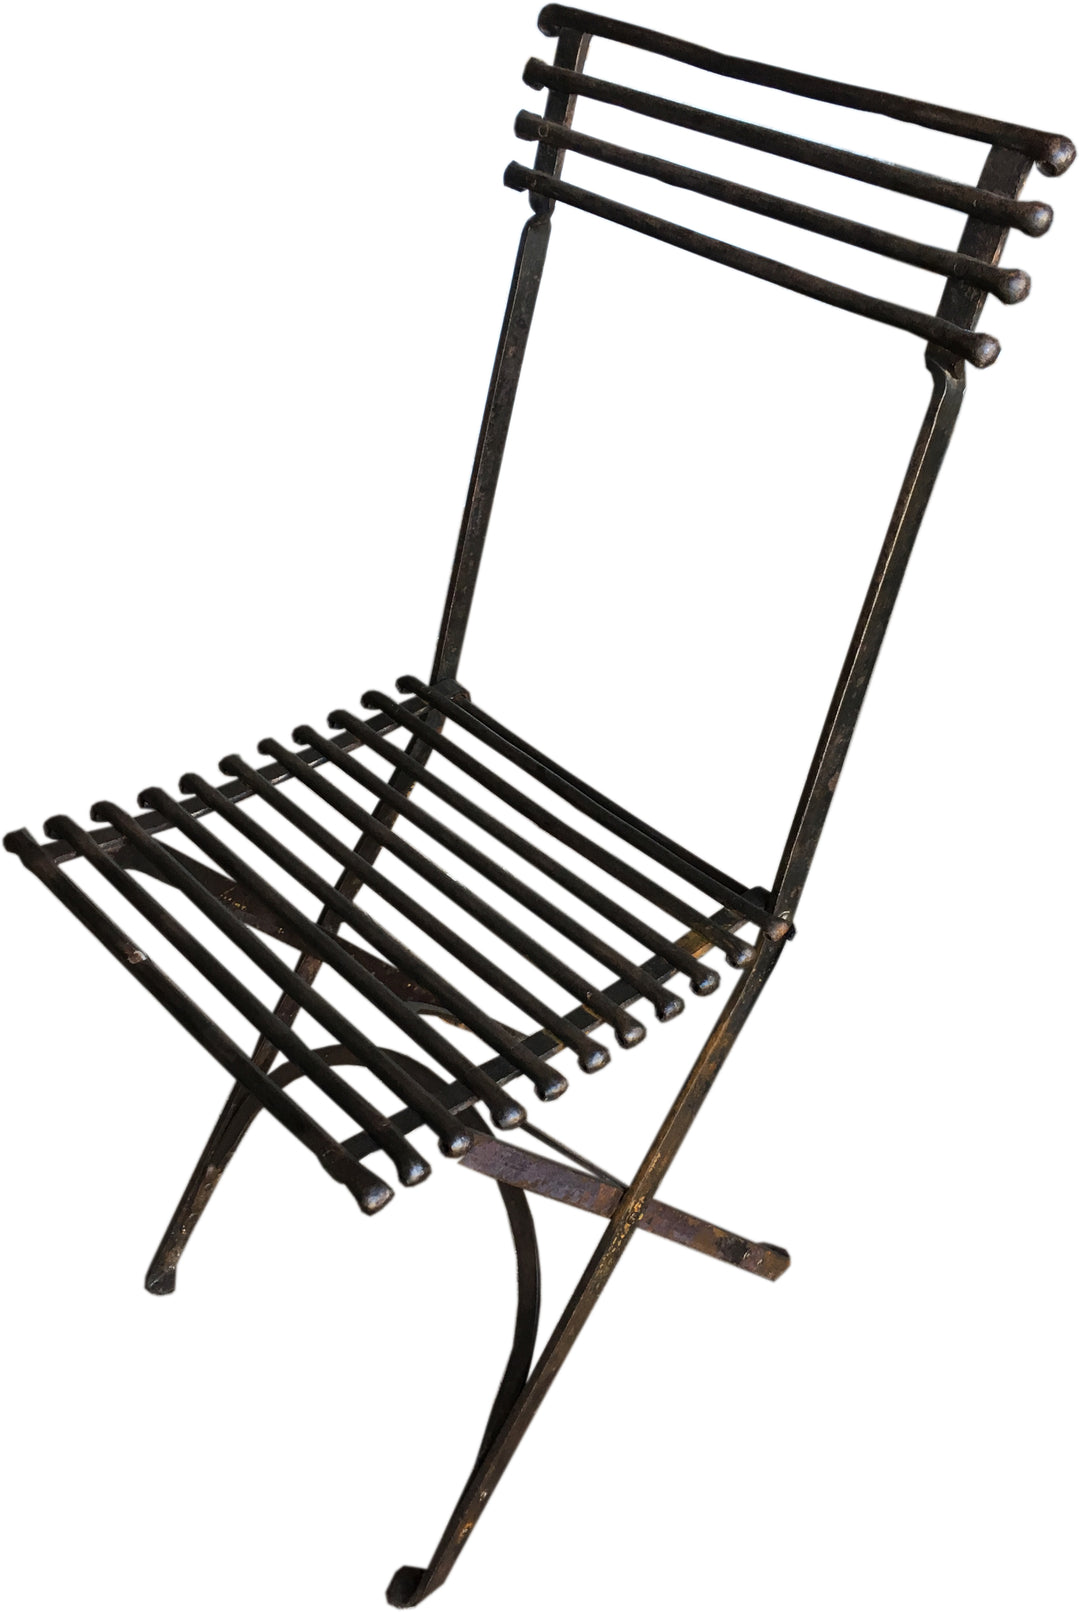 Arras Metal Folding Garden Chair